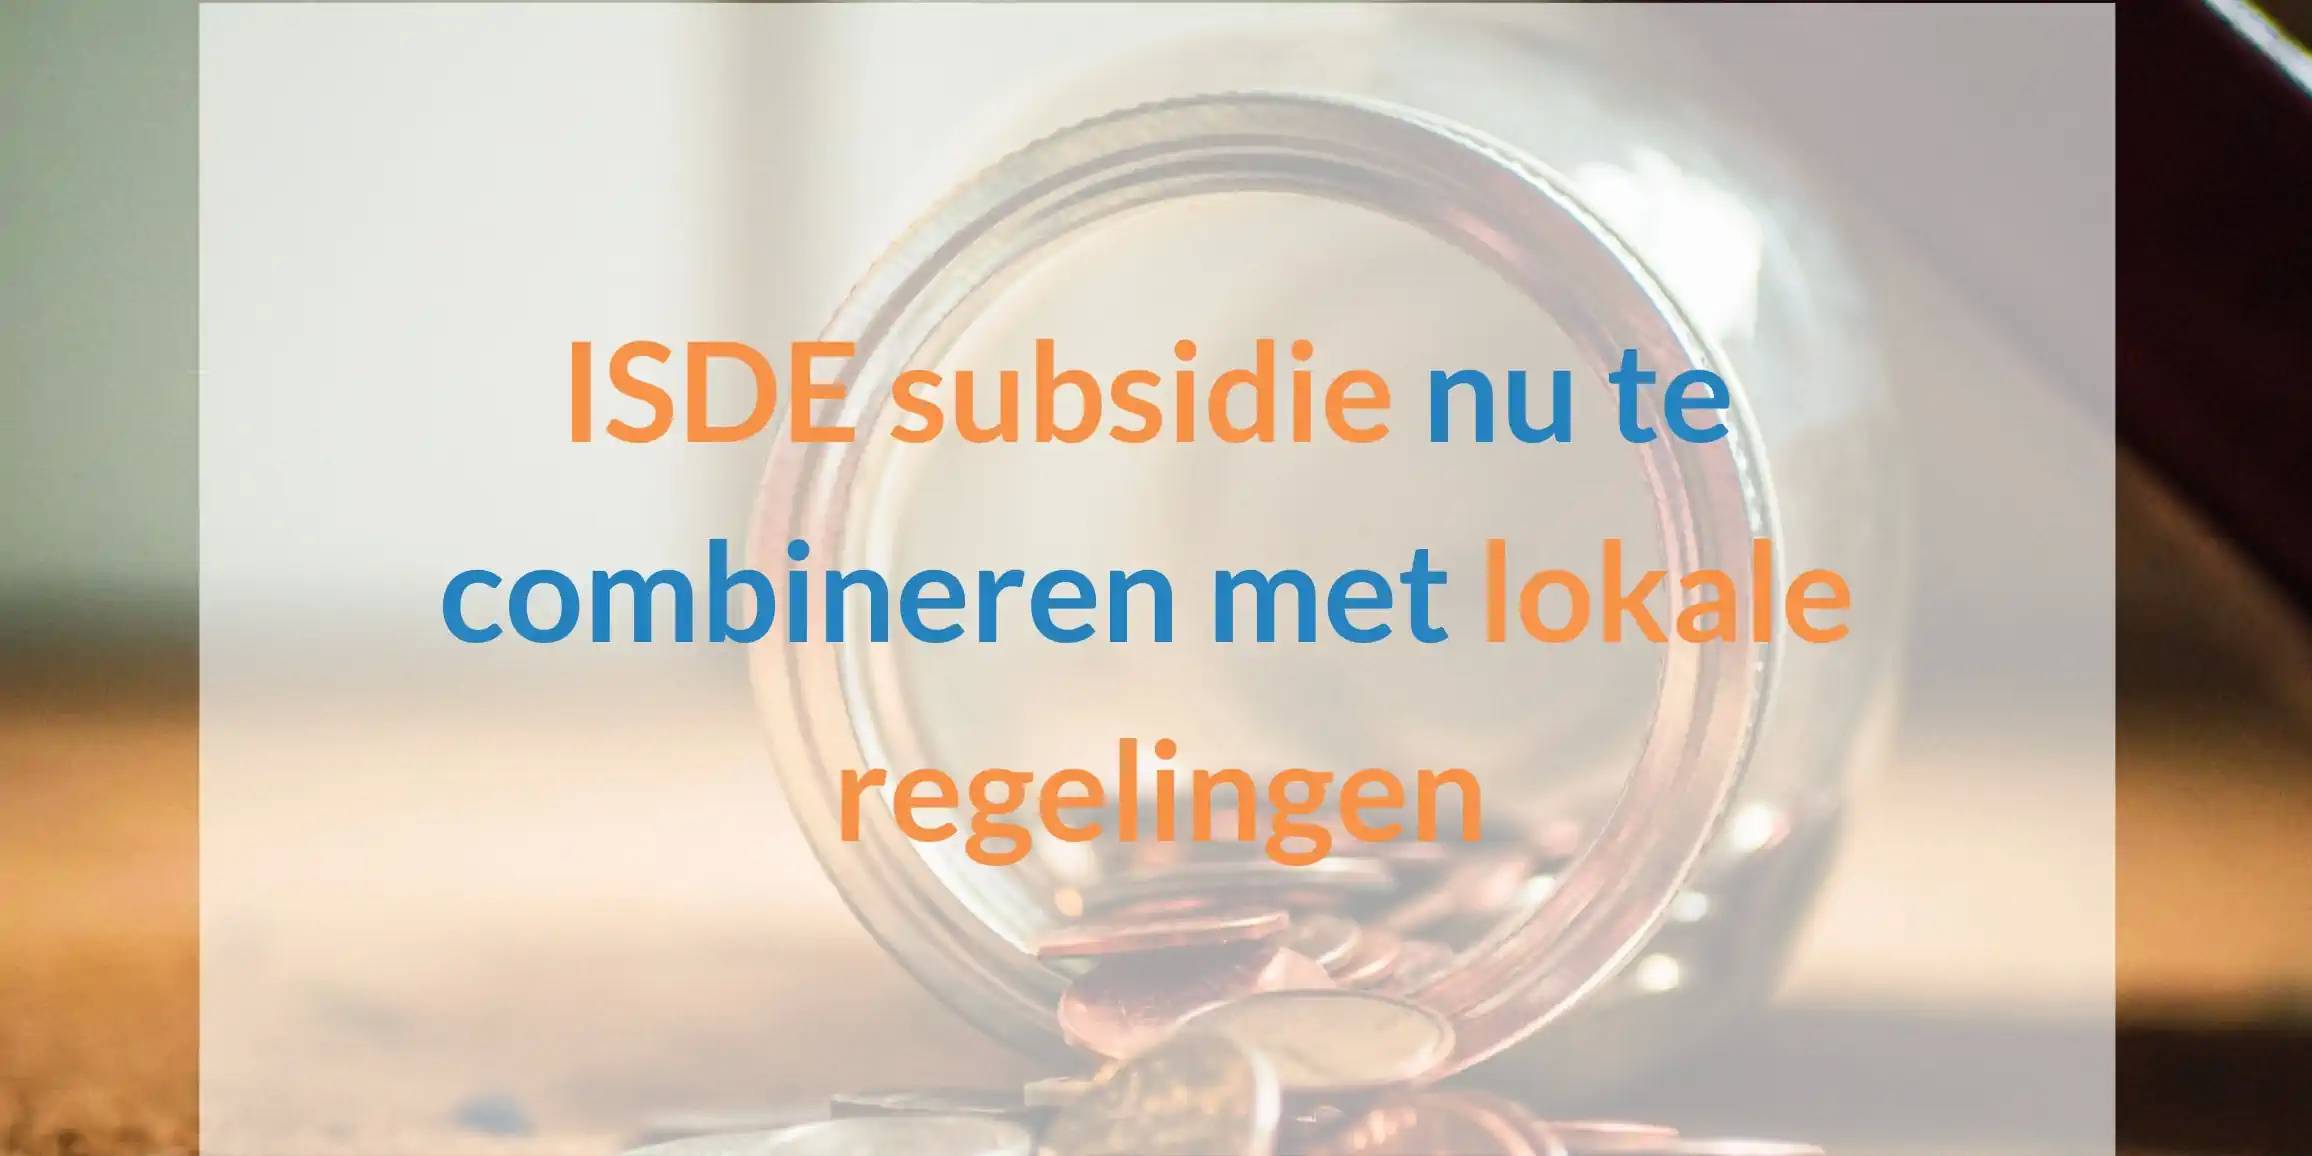 ISDE subsidie nu te koppelen met lokale subsidies